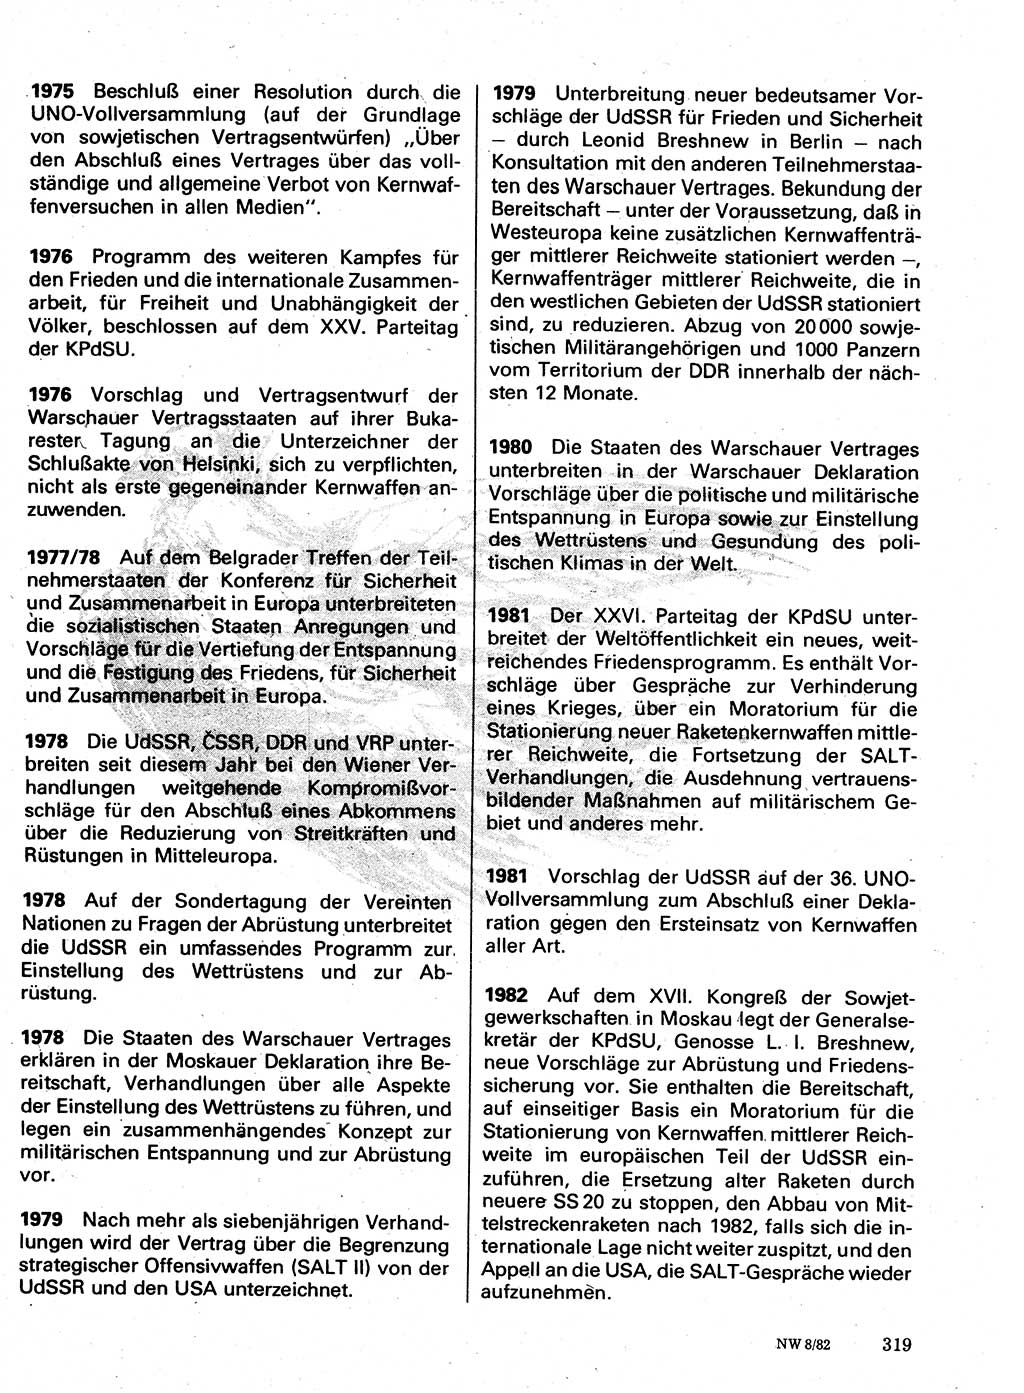 Neuer Weg (NW), Organ des Zentralkomitees (ZK) der SED (Sozialistische Einheitspartei Deutschlands) für Fragen des Parteilebens, 37. Jahrgang [Deutsche Demokratische Republik (DDR)] 1982, Seite 319 (NW ZK SED DDR 1982, S. 319)